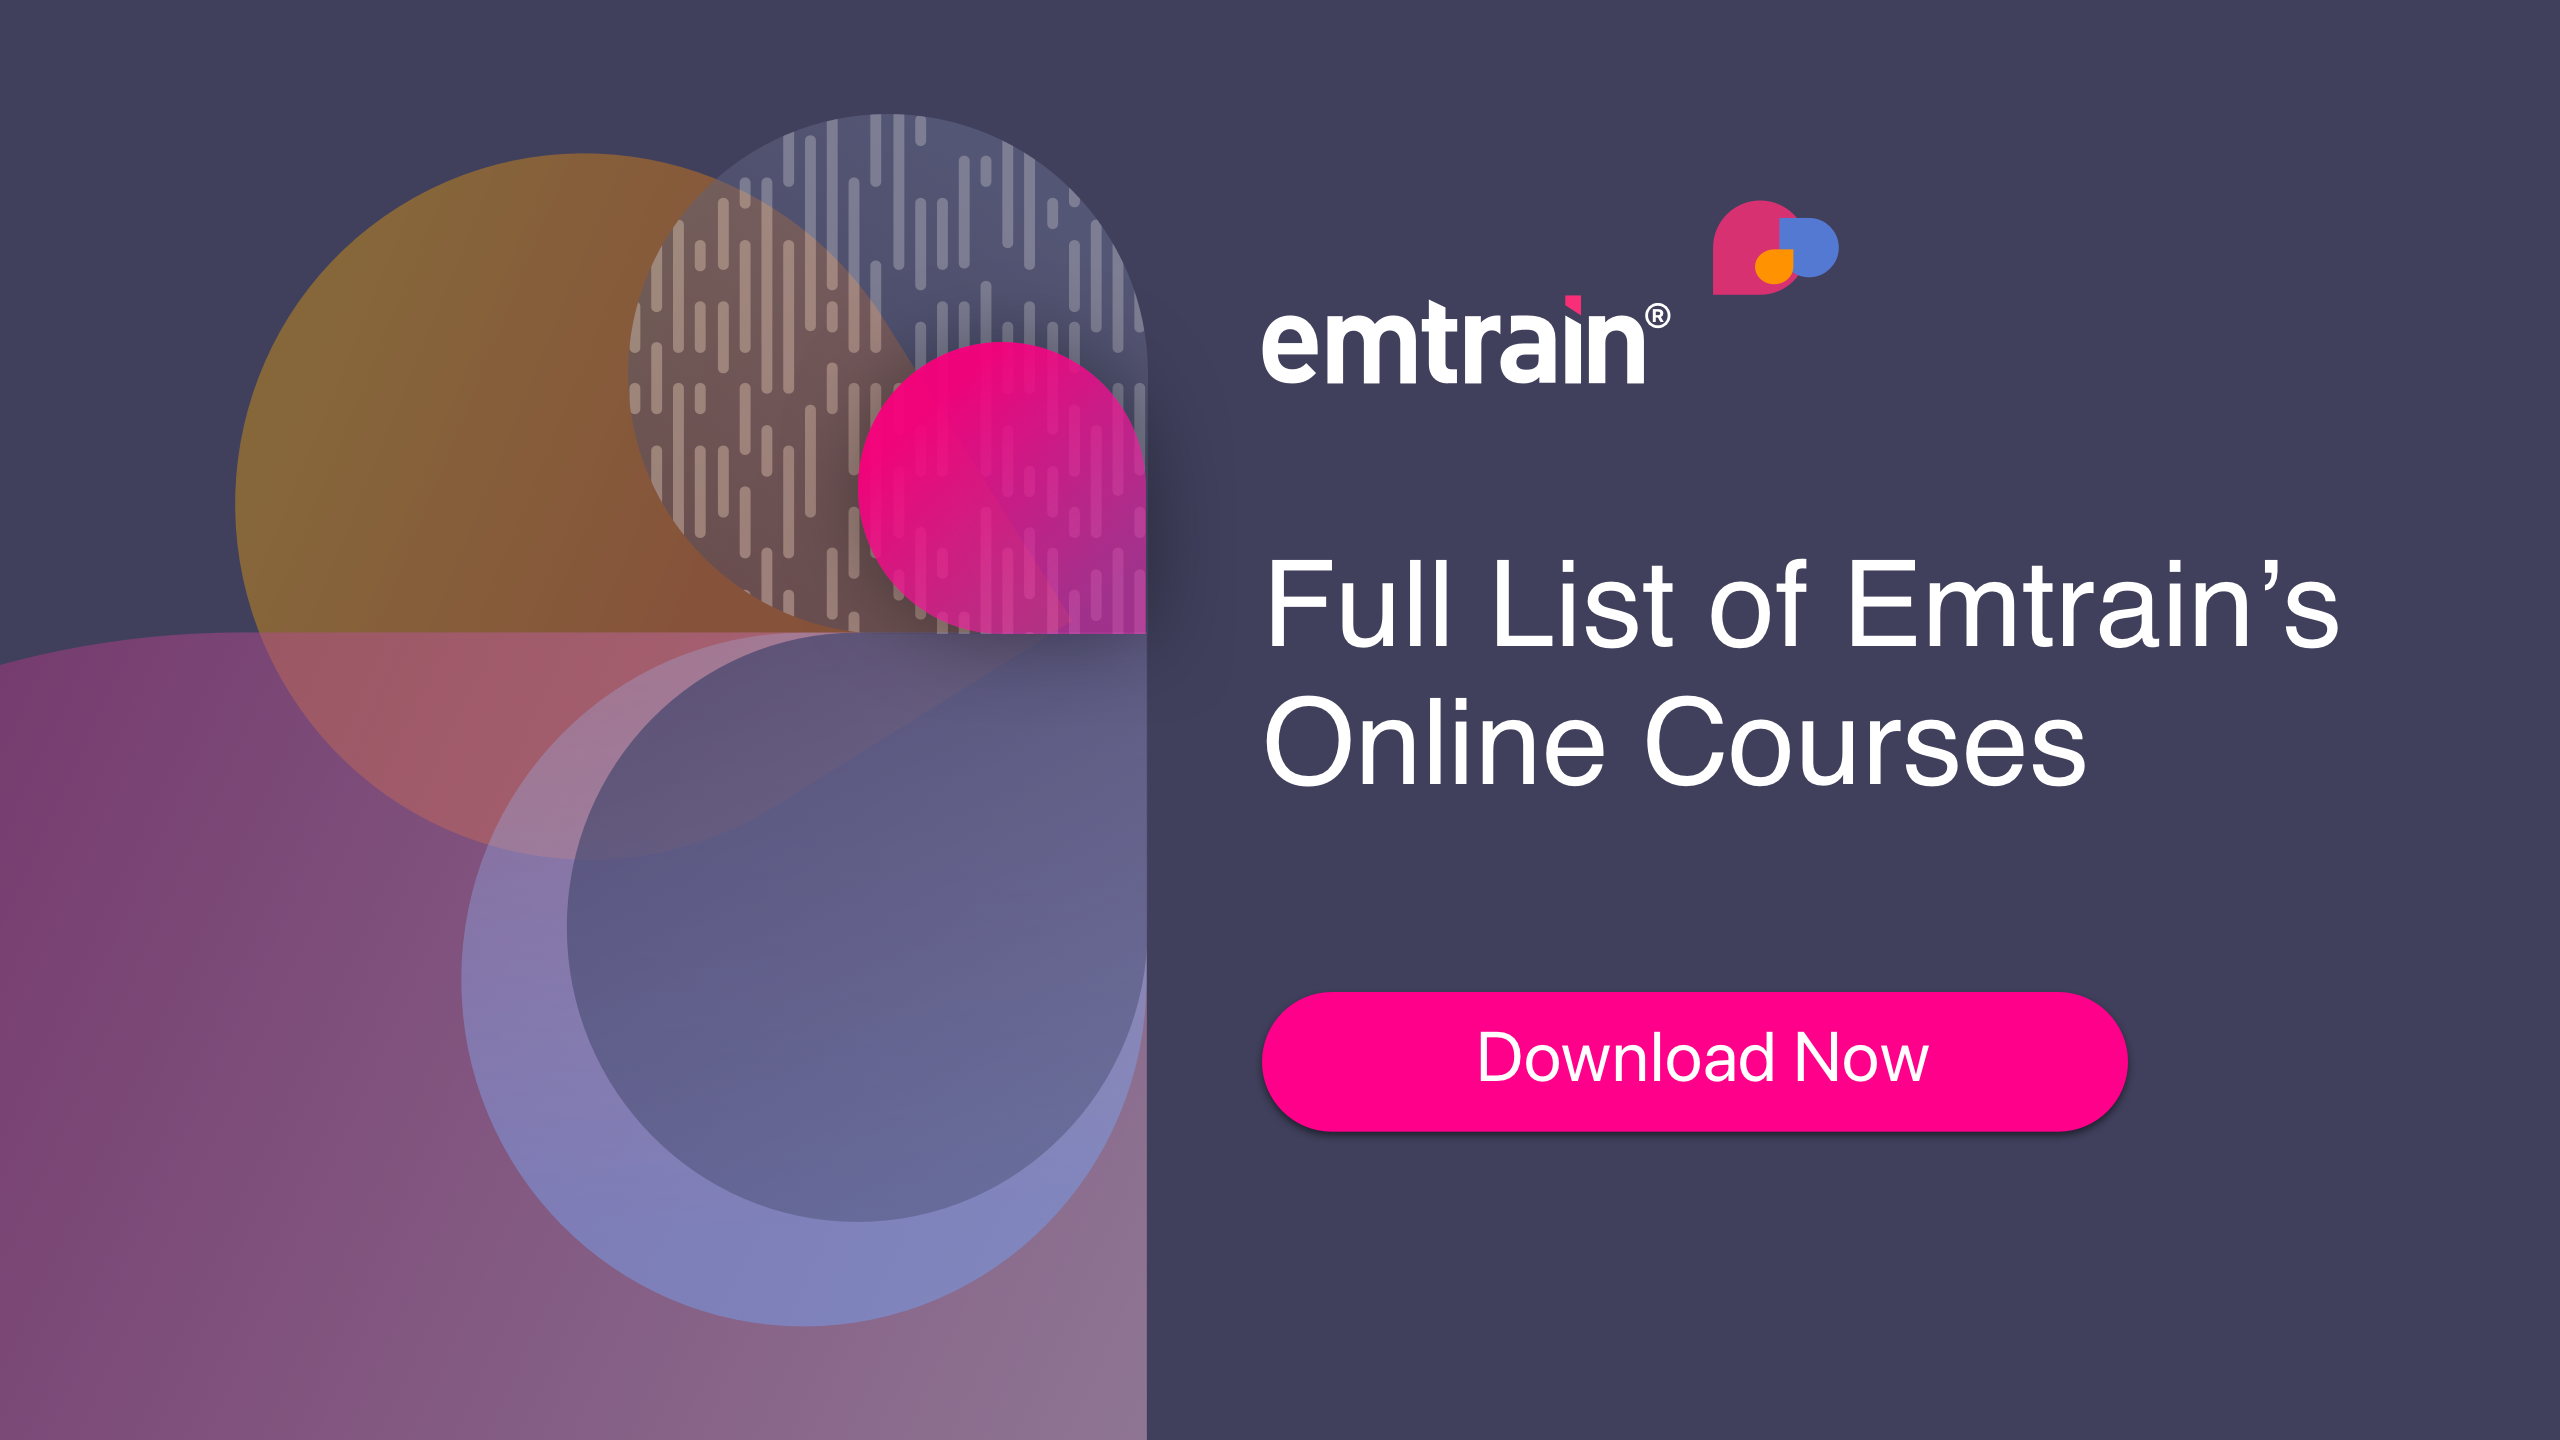 Full List of Emtrain's Online Courses